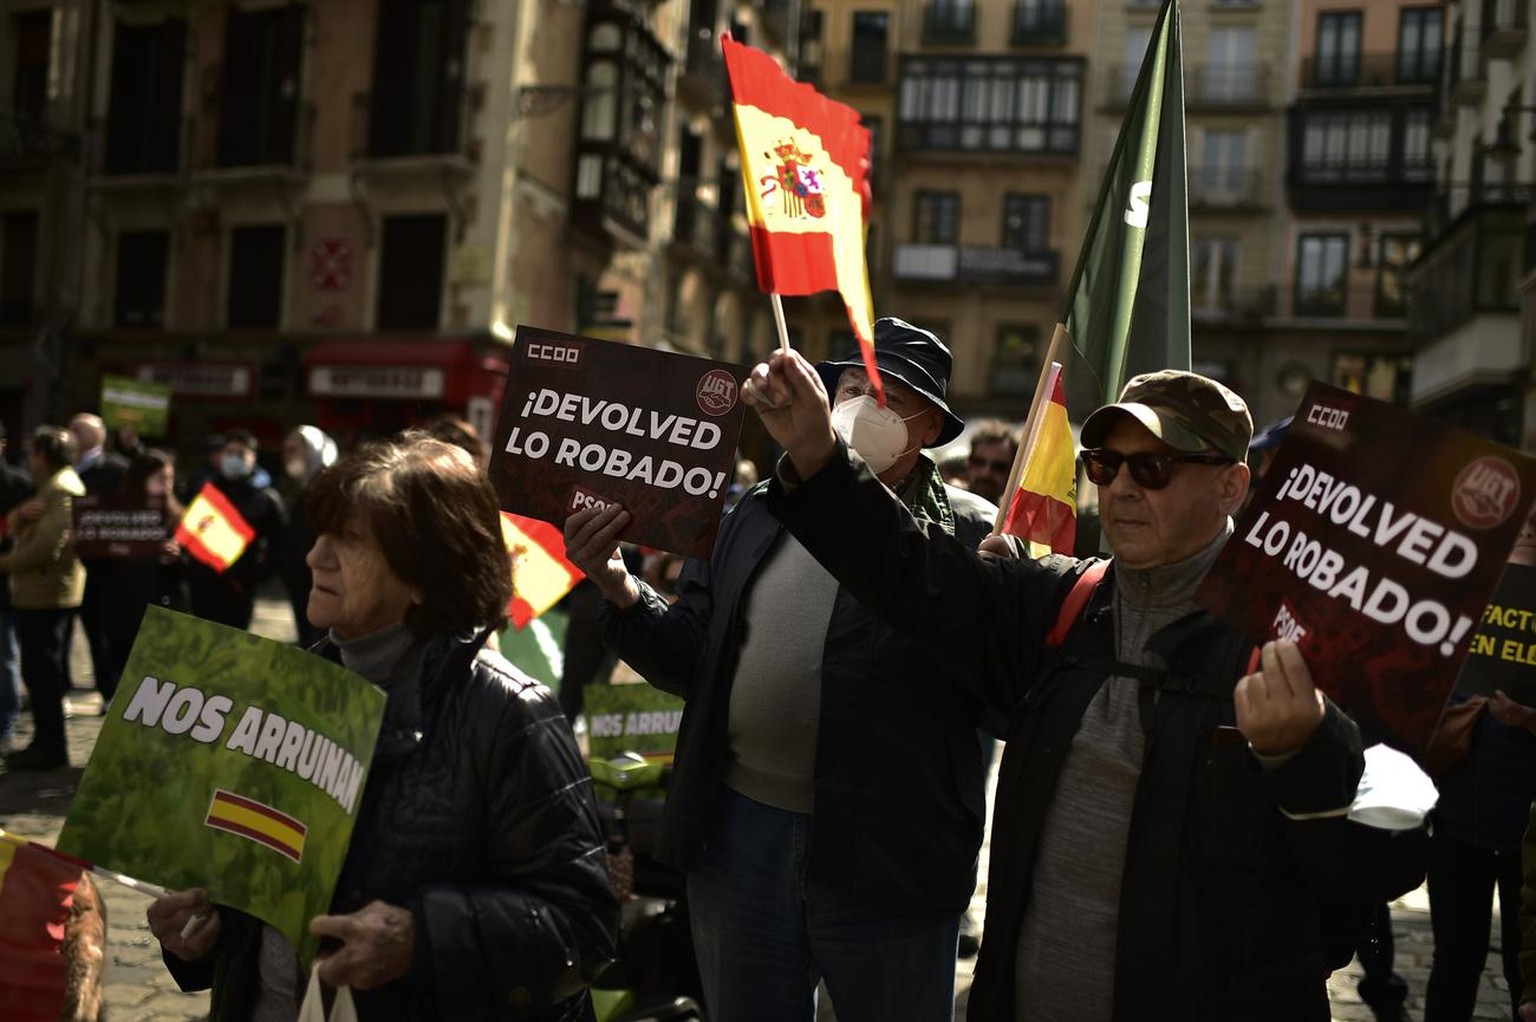 Des partisans d'extrême droite se rassemblent pour protester contre le gouvernement espagnol et le prix élevé de la nourriture et de l'énergie, à Pampelune, dans le nord de l'Espagne, le samedi 19 mars 2022.